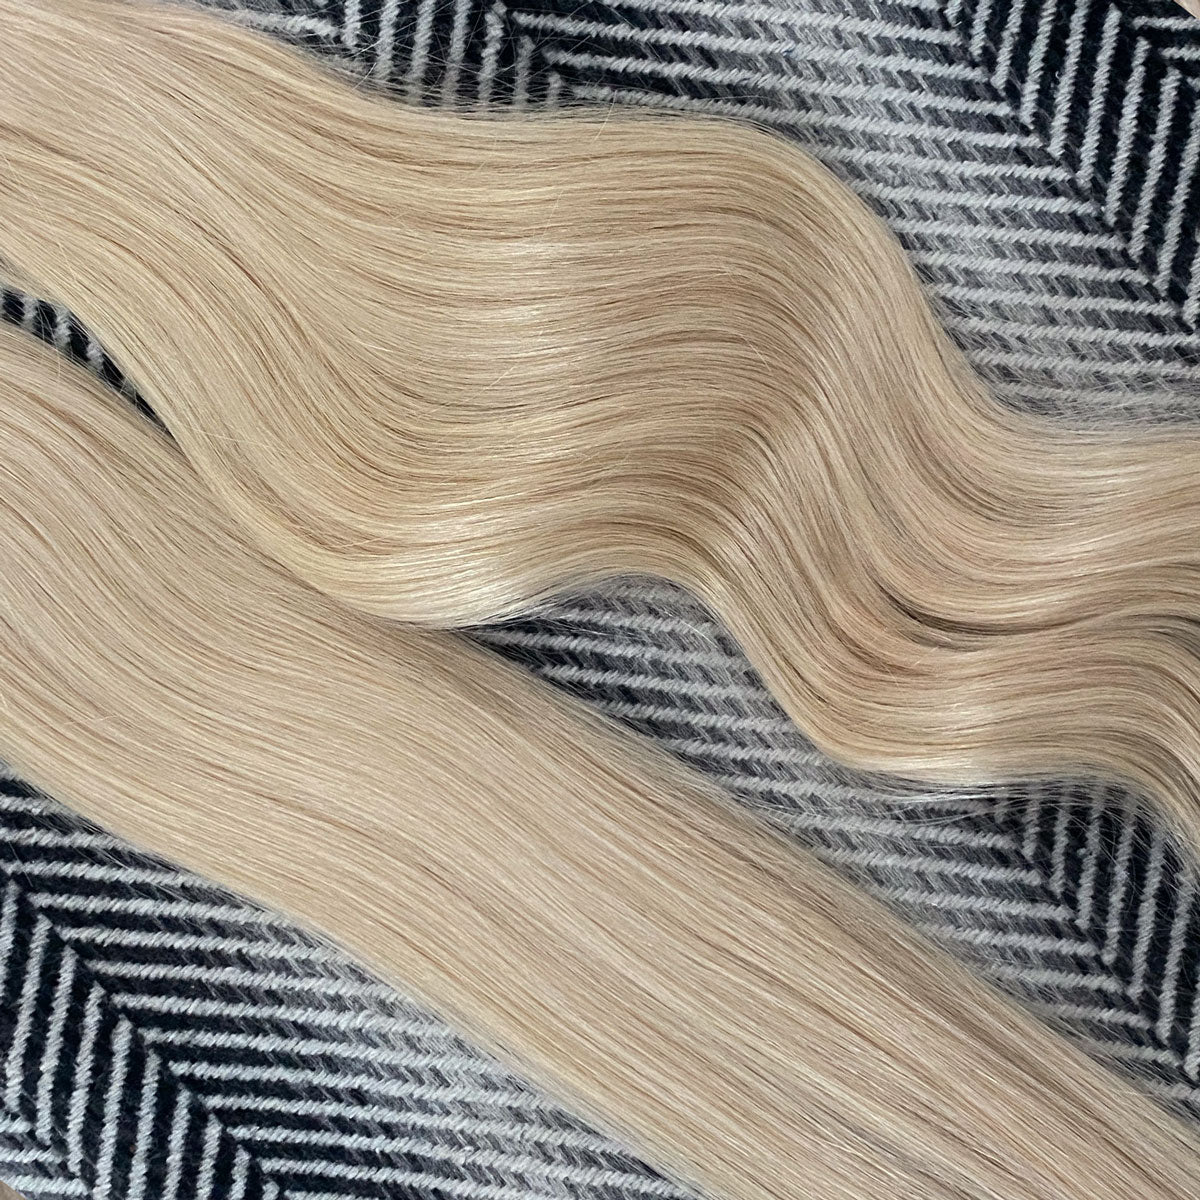 Tape Hair Extensions 21"  #60b Light Vanilla Blonde